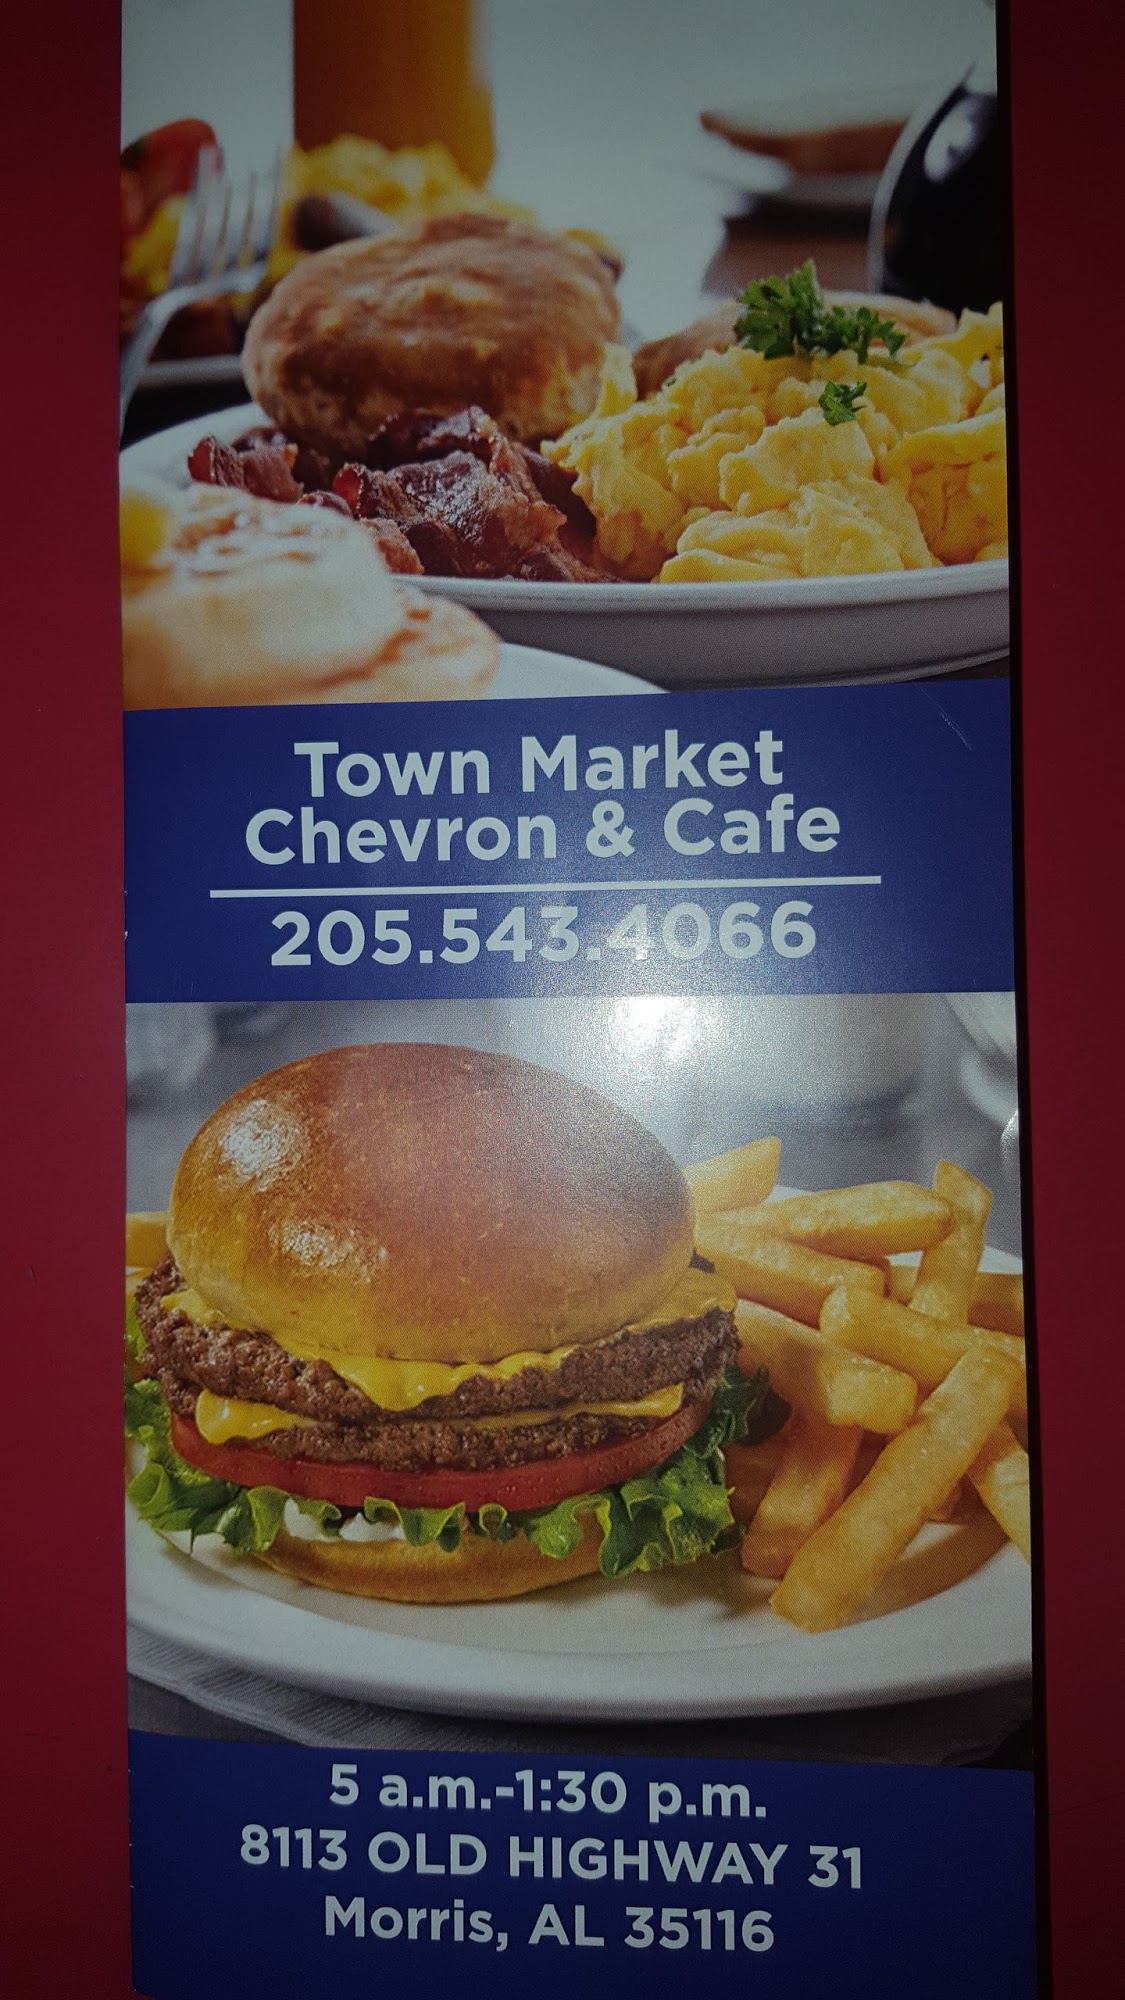 Town Market Chevron & Cafe